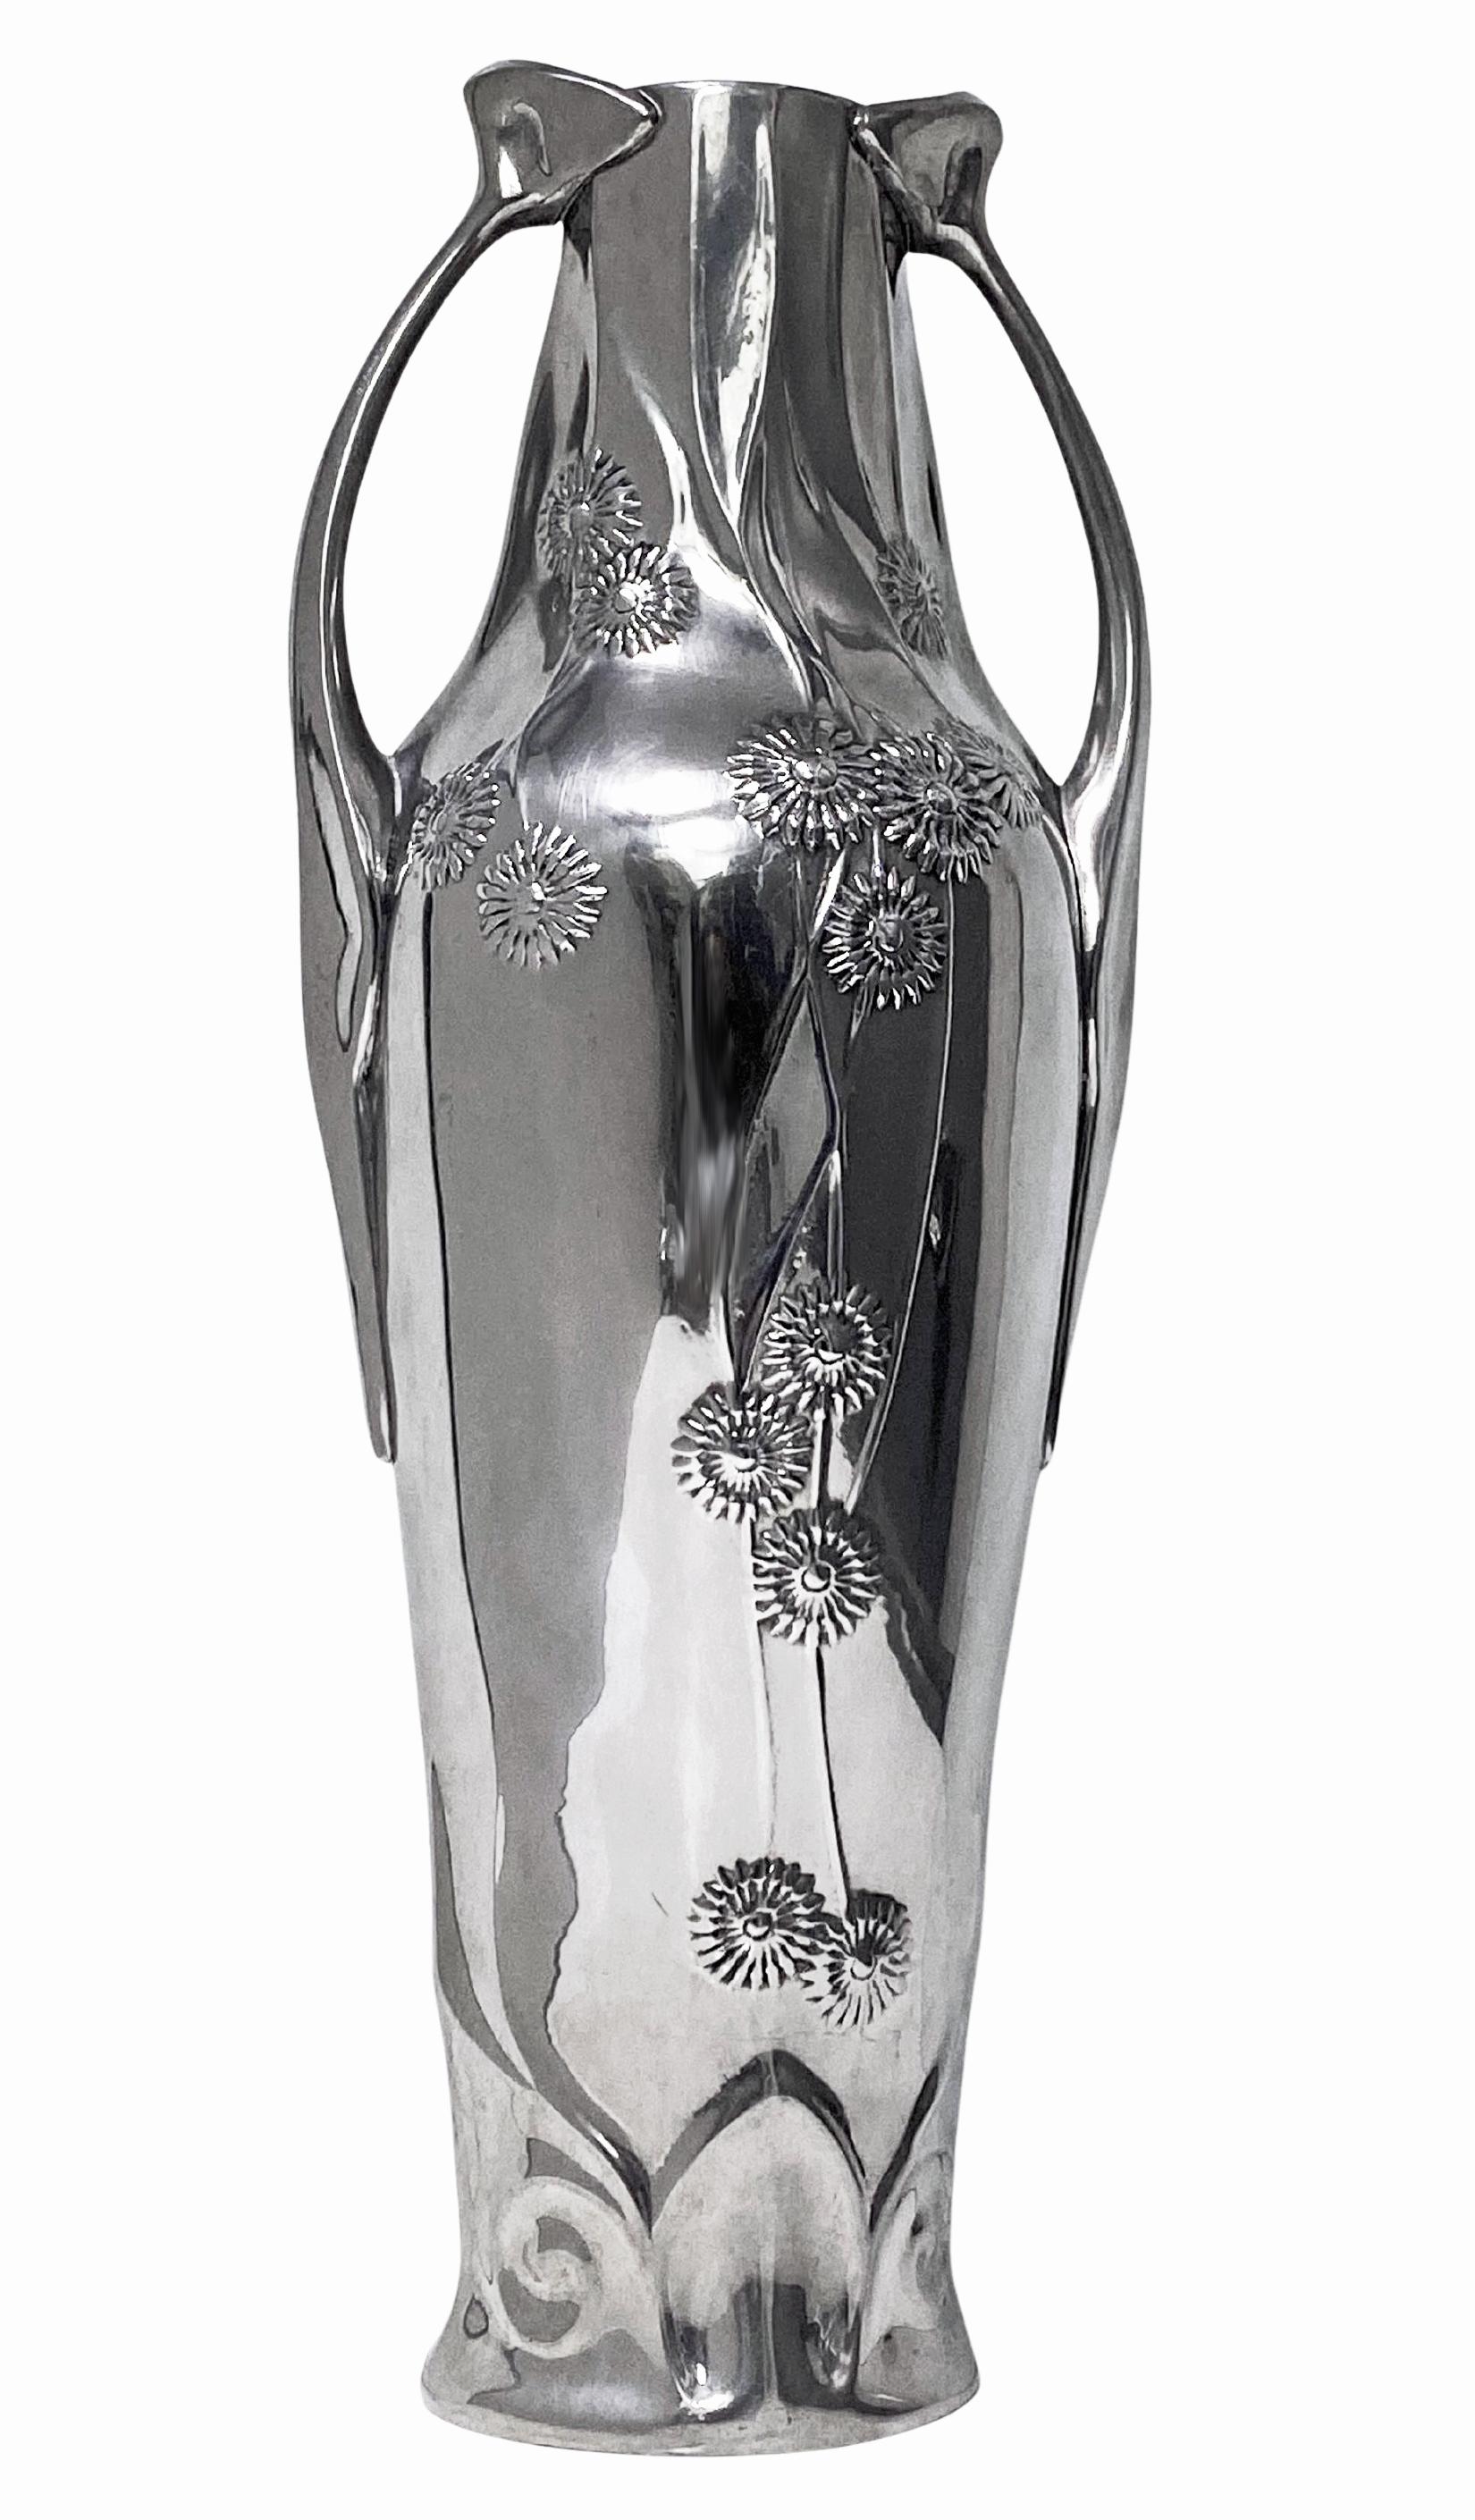 Kayserzinn polished Pewter Vase, art nouveau style, Germany 20th century. Stamped 4408 Kayserzinn on base. Height: 11.25 inches.